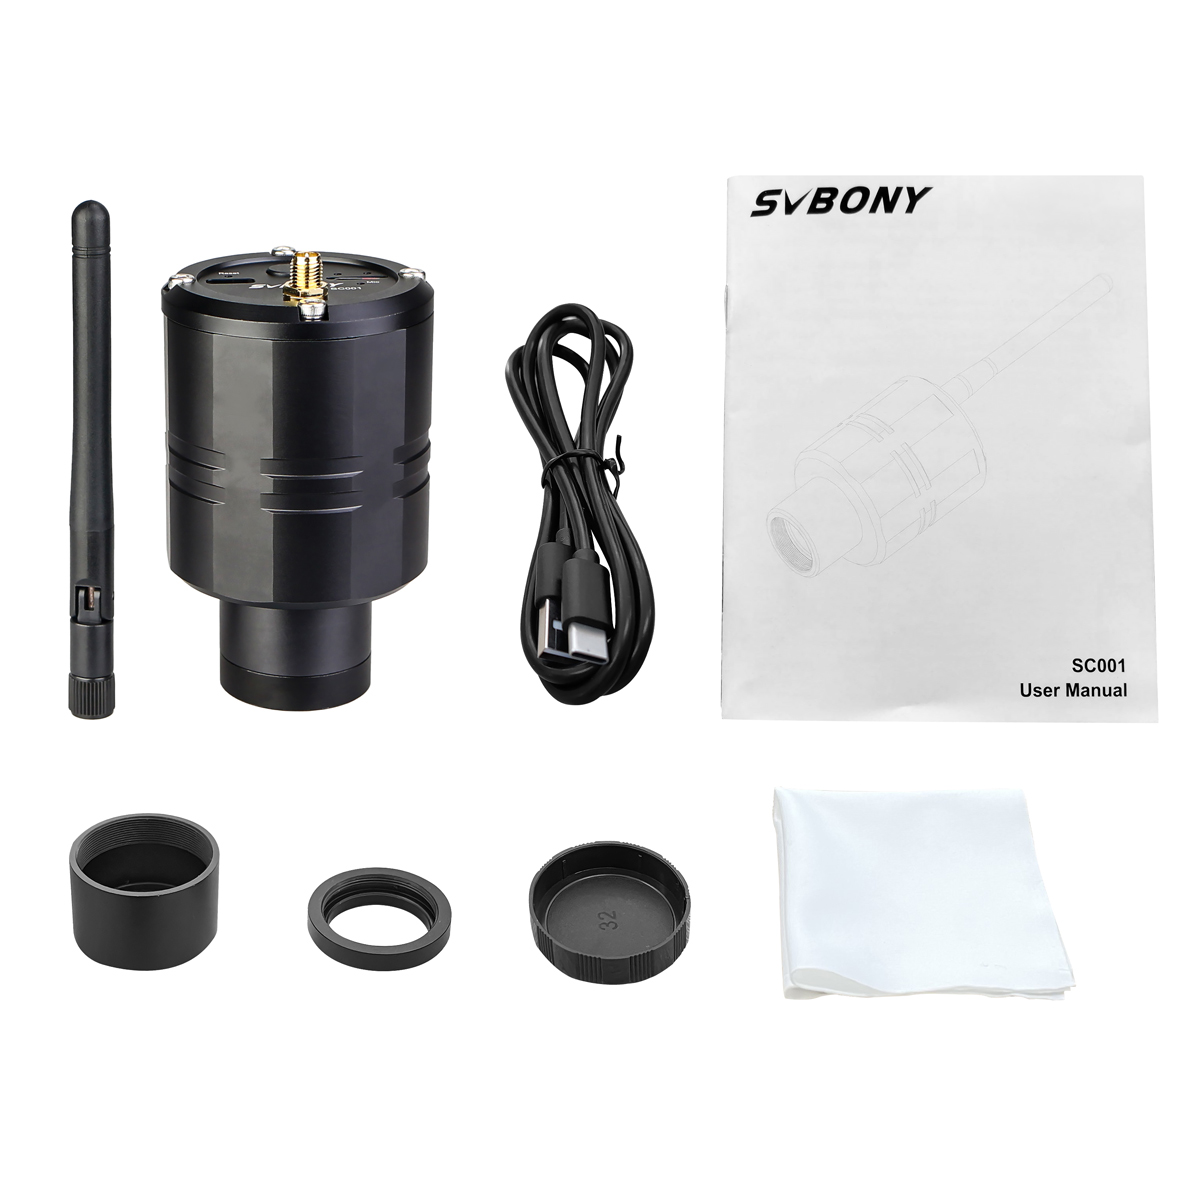 Svbony SC001 wifi spotting scope camera package